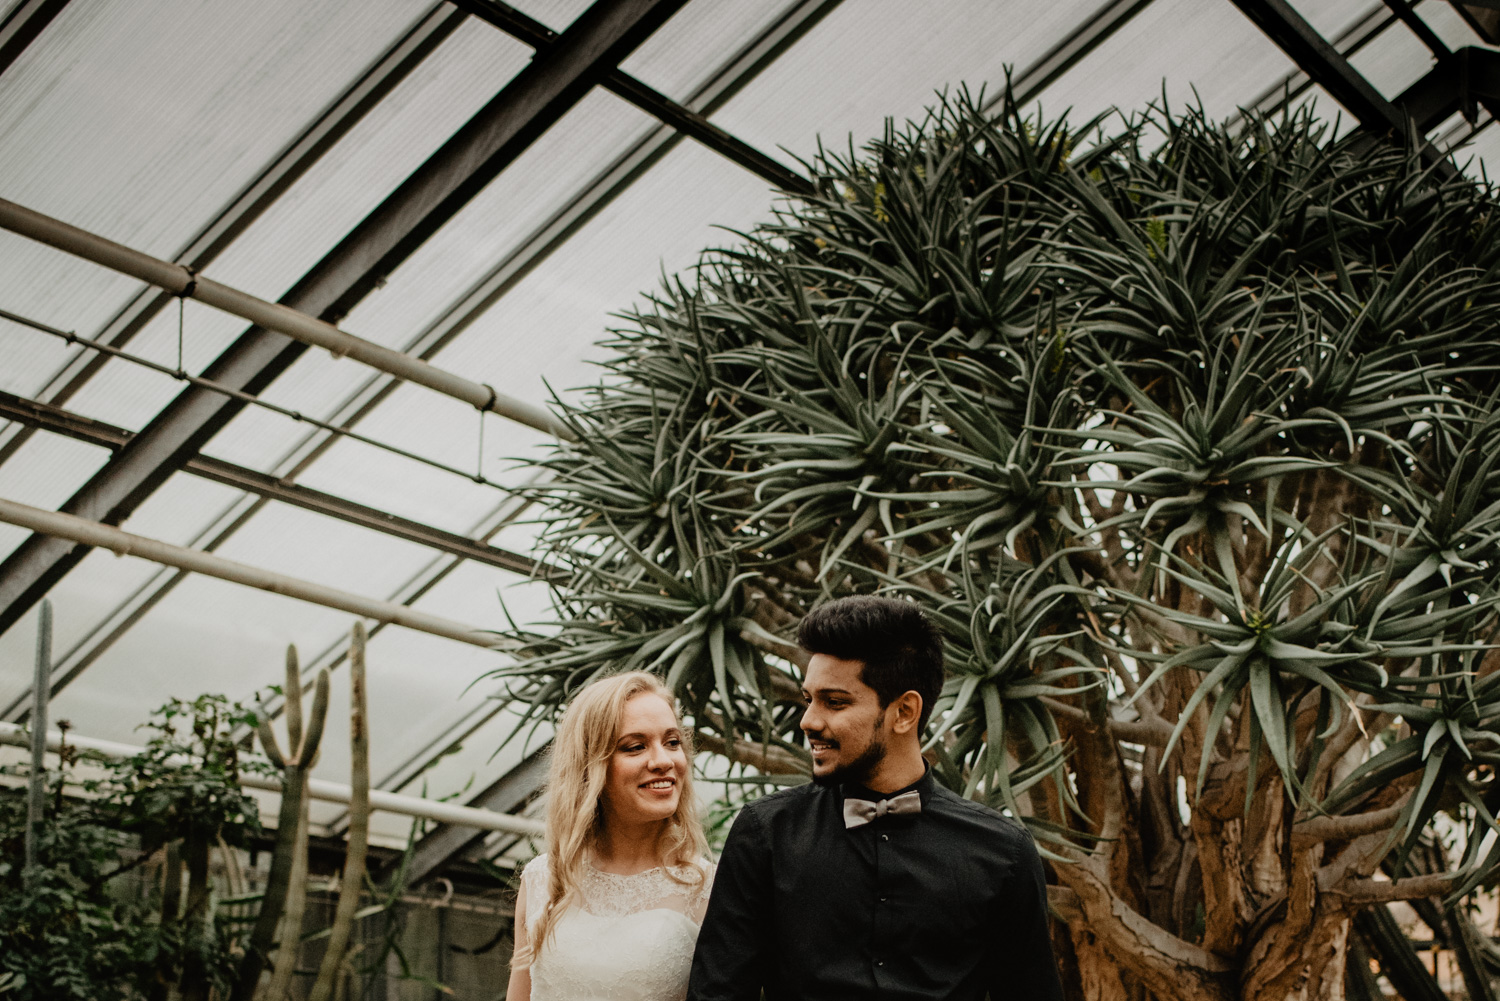 Ein multikultturelles Brautpaar, fotografiert ab dem Rumpf aufwärts und mit mediterranen Pflanzen im Hintergrund.